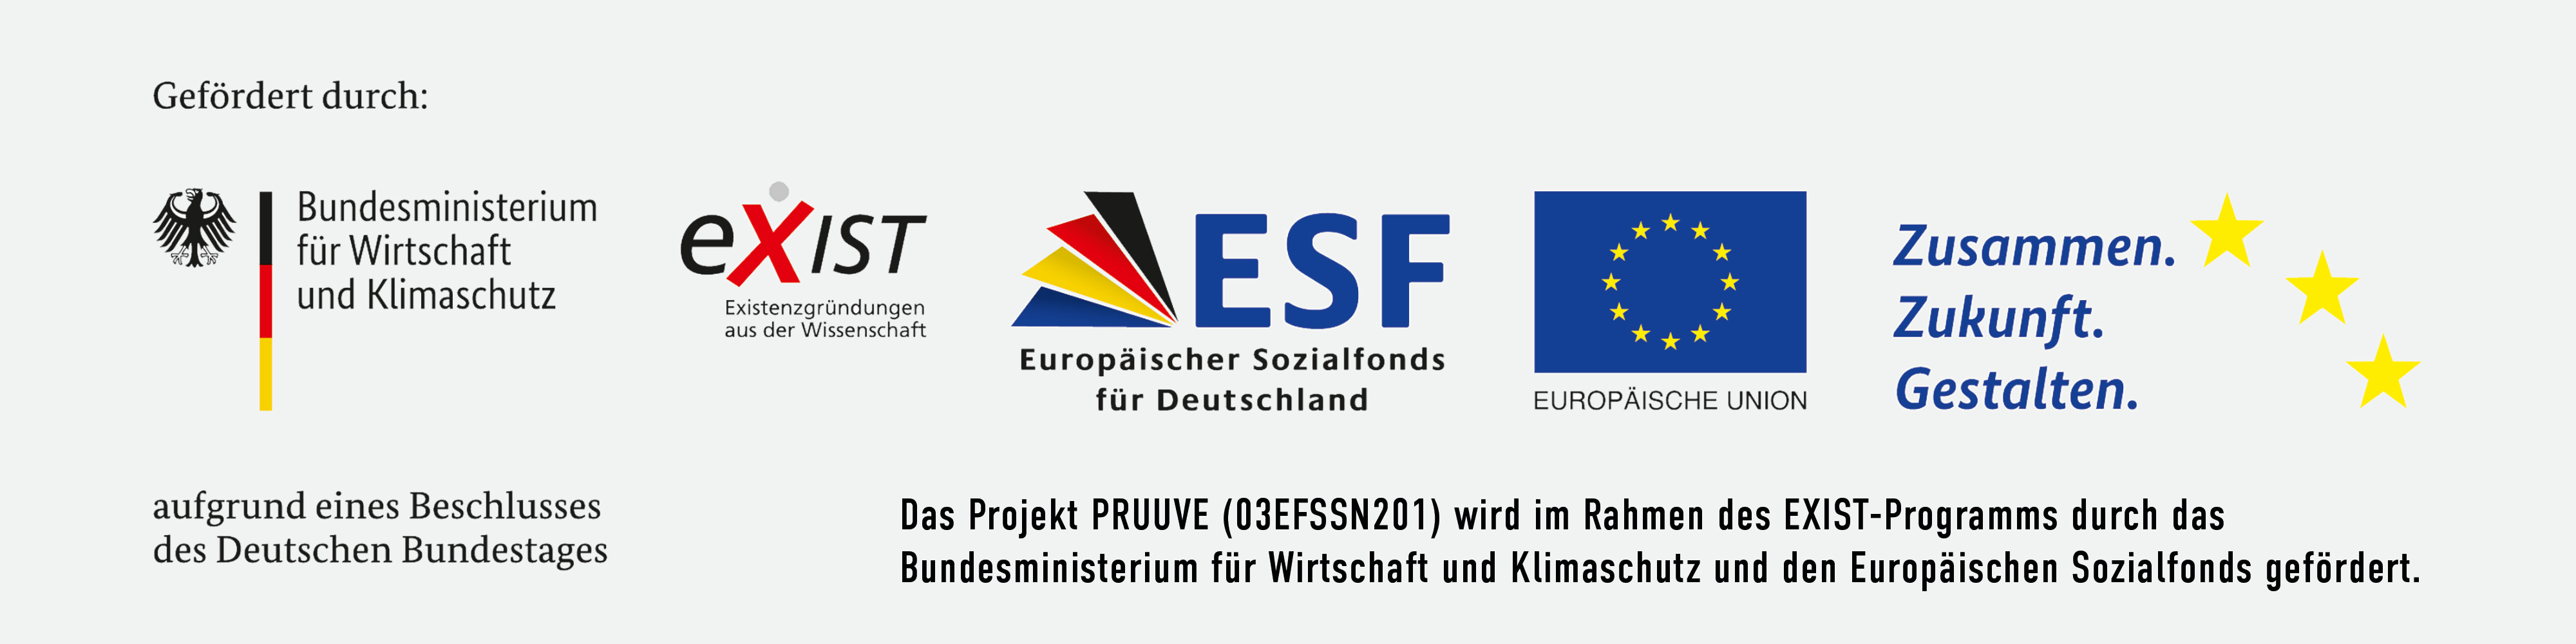 Wir sind gefördert durch Bundesministerium für Wirtschaft und Klimaschutz EXIST ESF Europäischer Sozialfonds für Deutschland EU. We are fundet by  